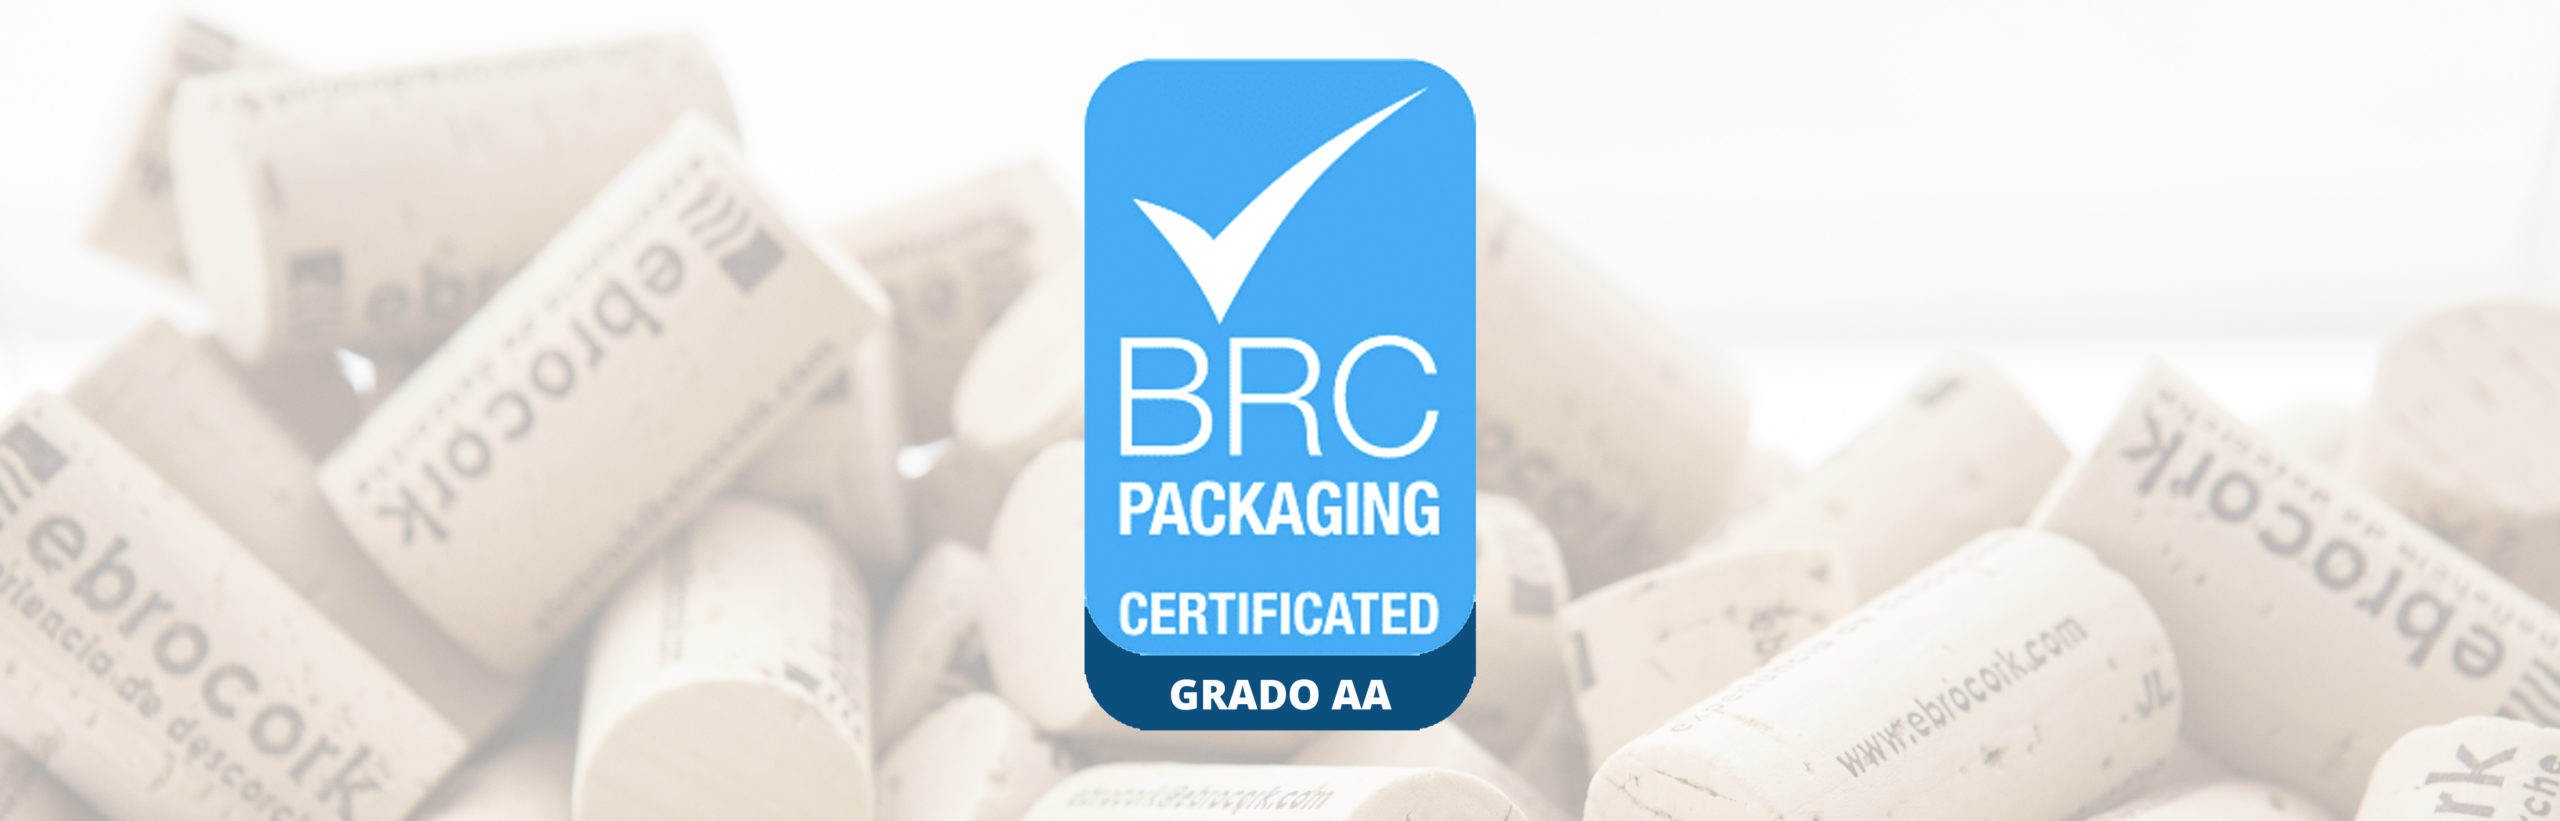 Ebrocork renueva su certificado BRC Materiales de envasado alcanzando el grado AA